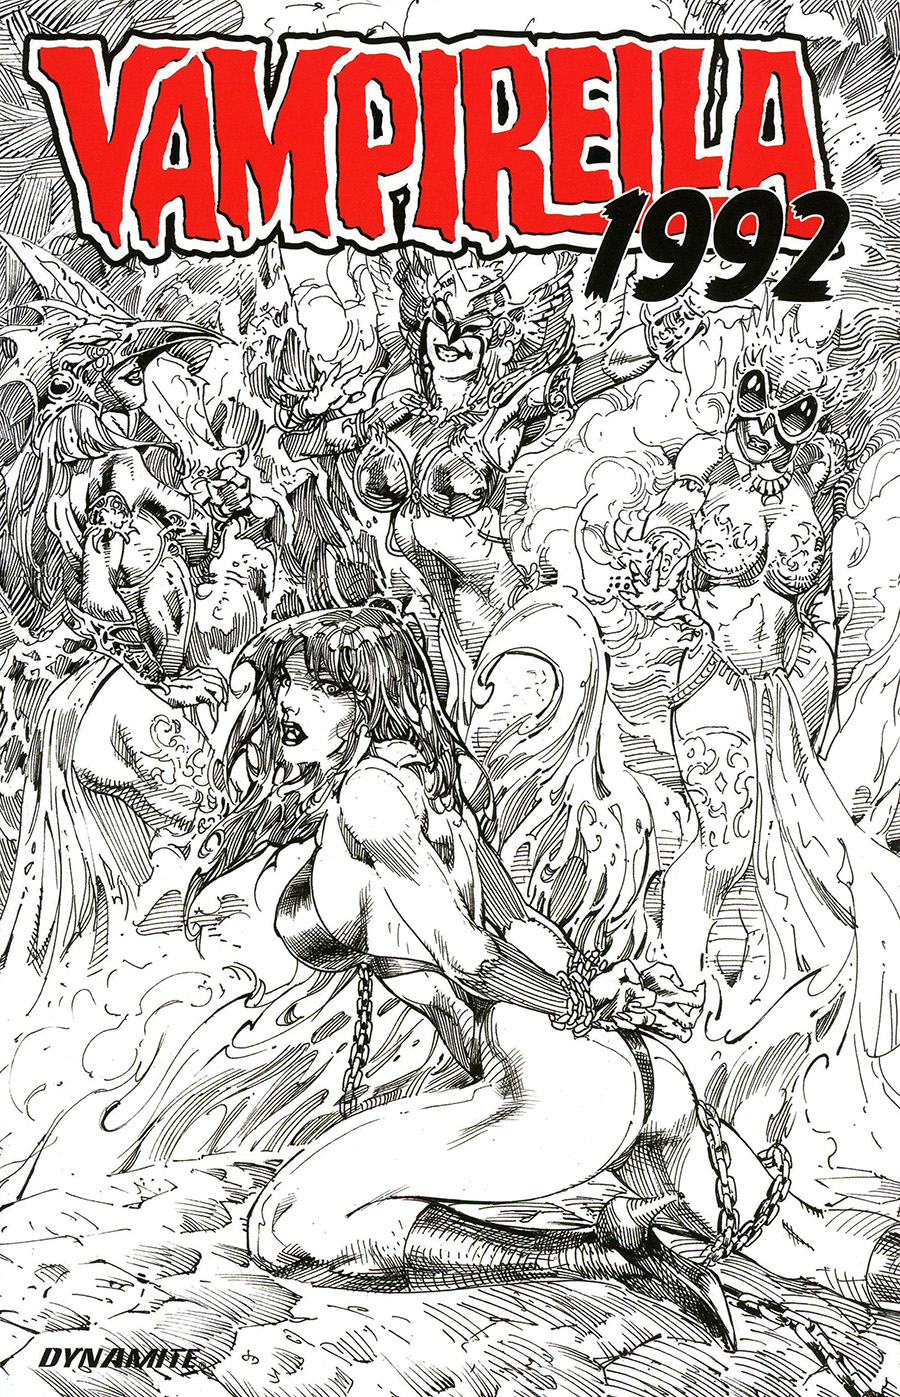 Vampirella 1992 #1 (One Shot) Cover F Incentive Roberto Castro Line Art Cover